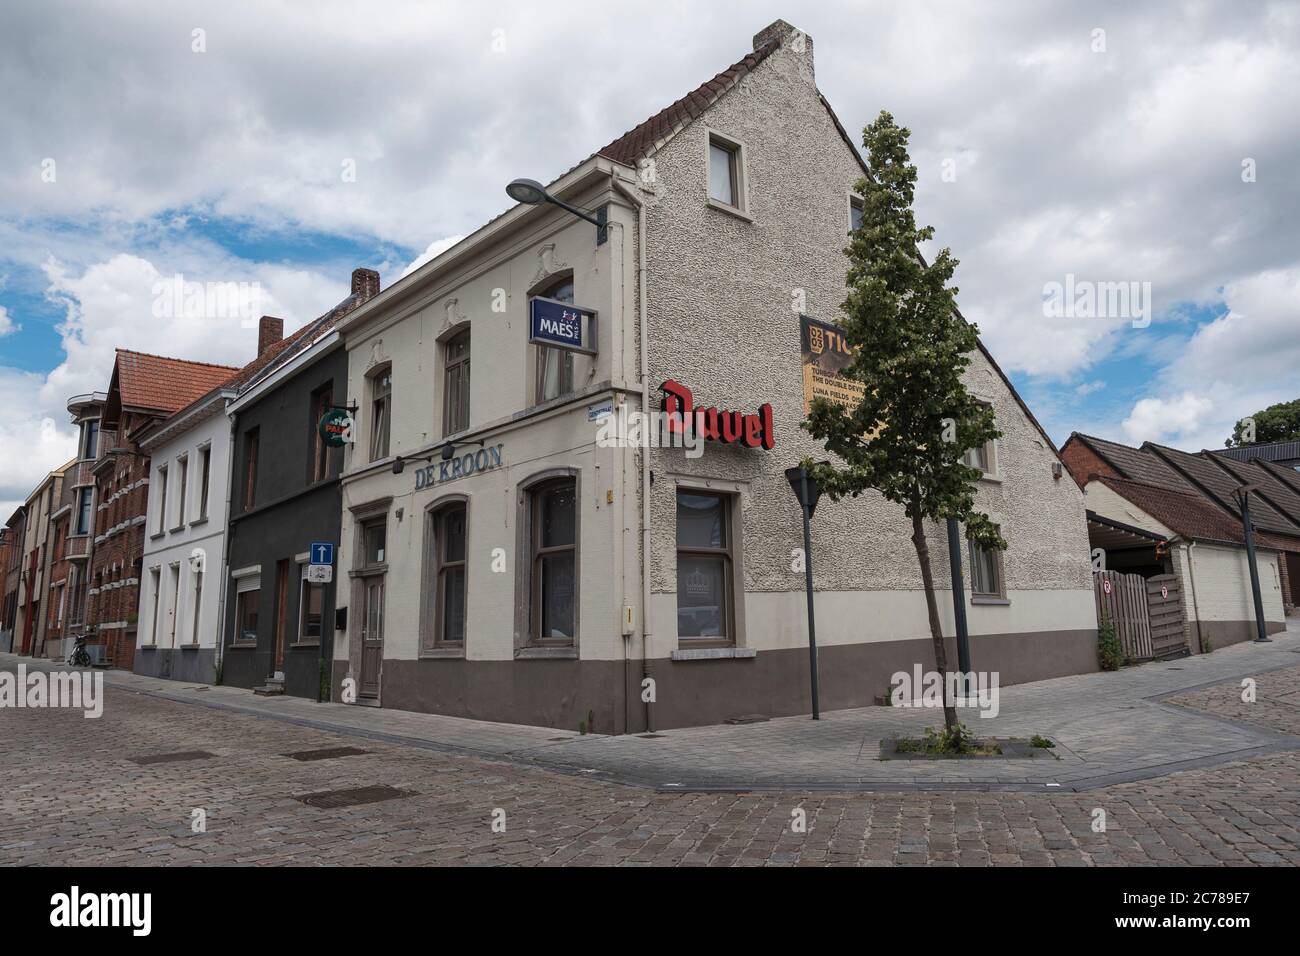 Tielrode, Belgique, 21 juin 2020, un vieux café populaire typique dans un village flamand Banque D'Images